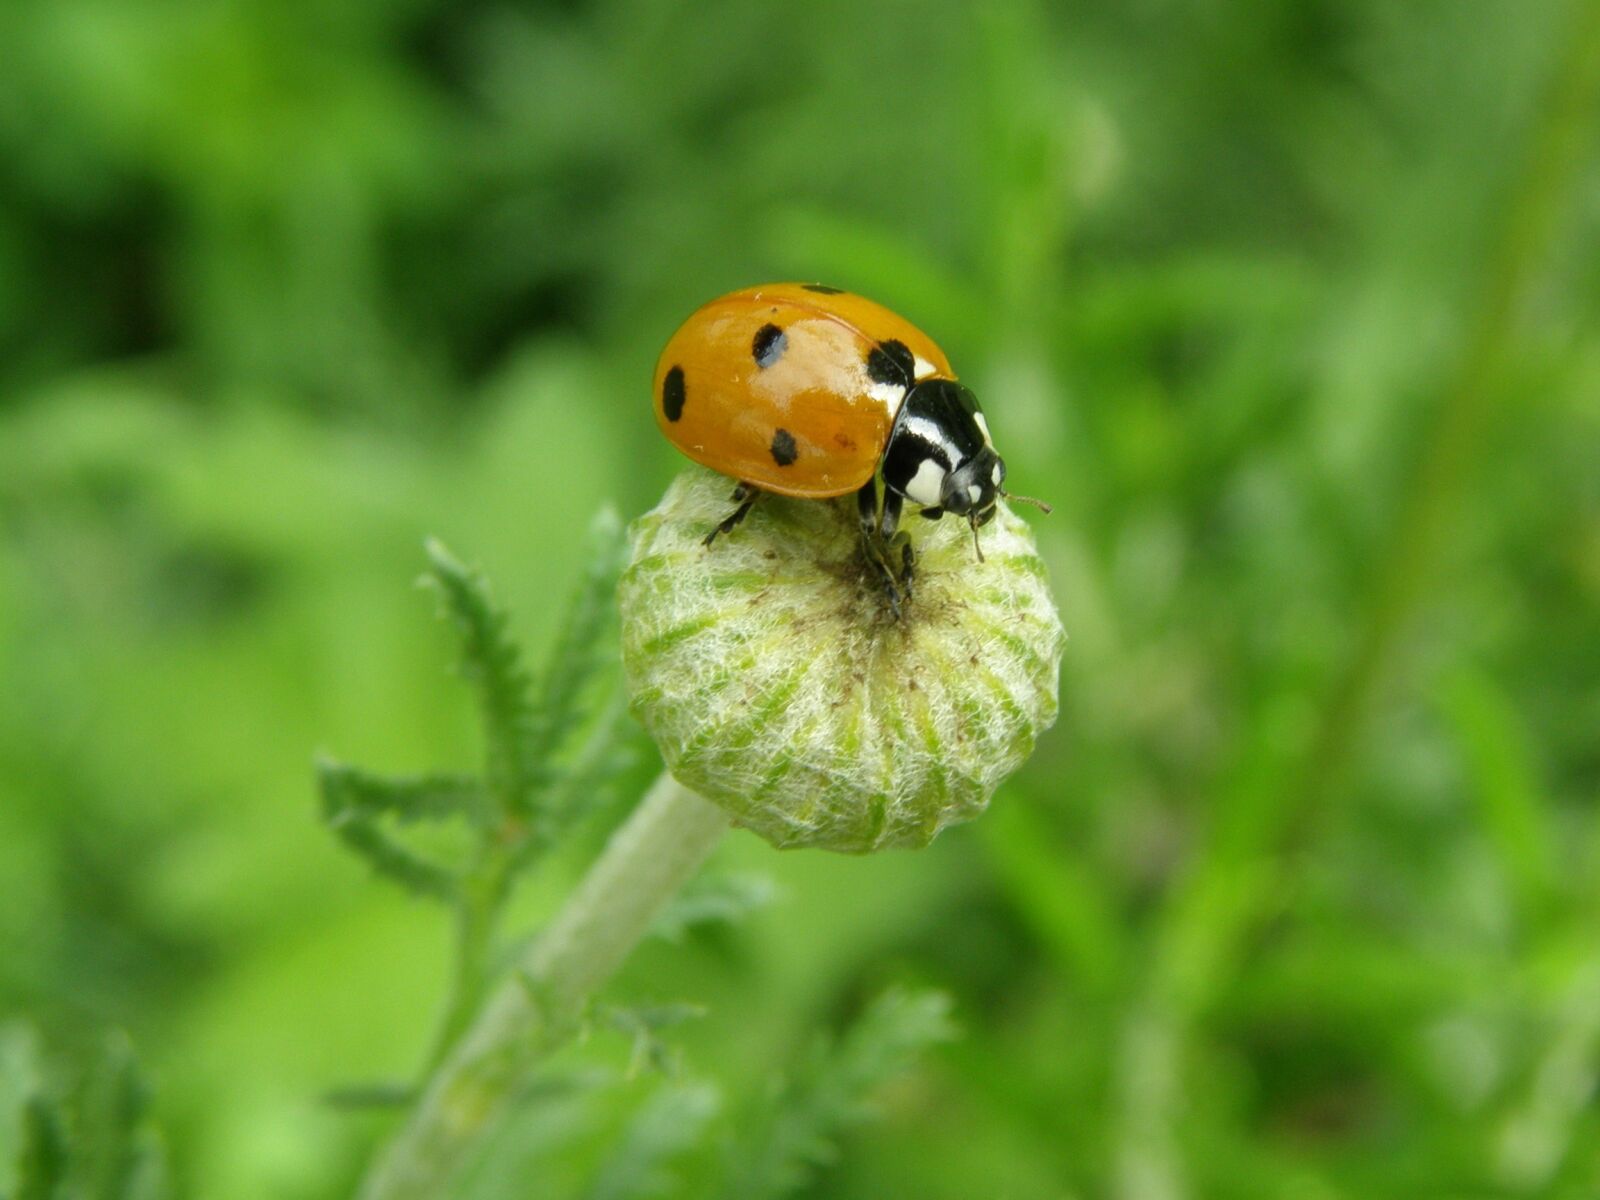 Olympus SP510UZ sample photo. Ladybug, lucky ladybug, beetle photography